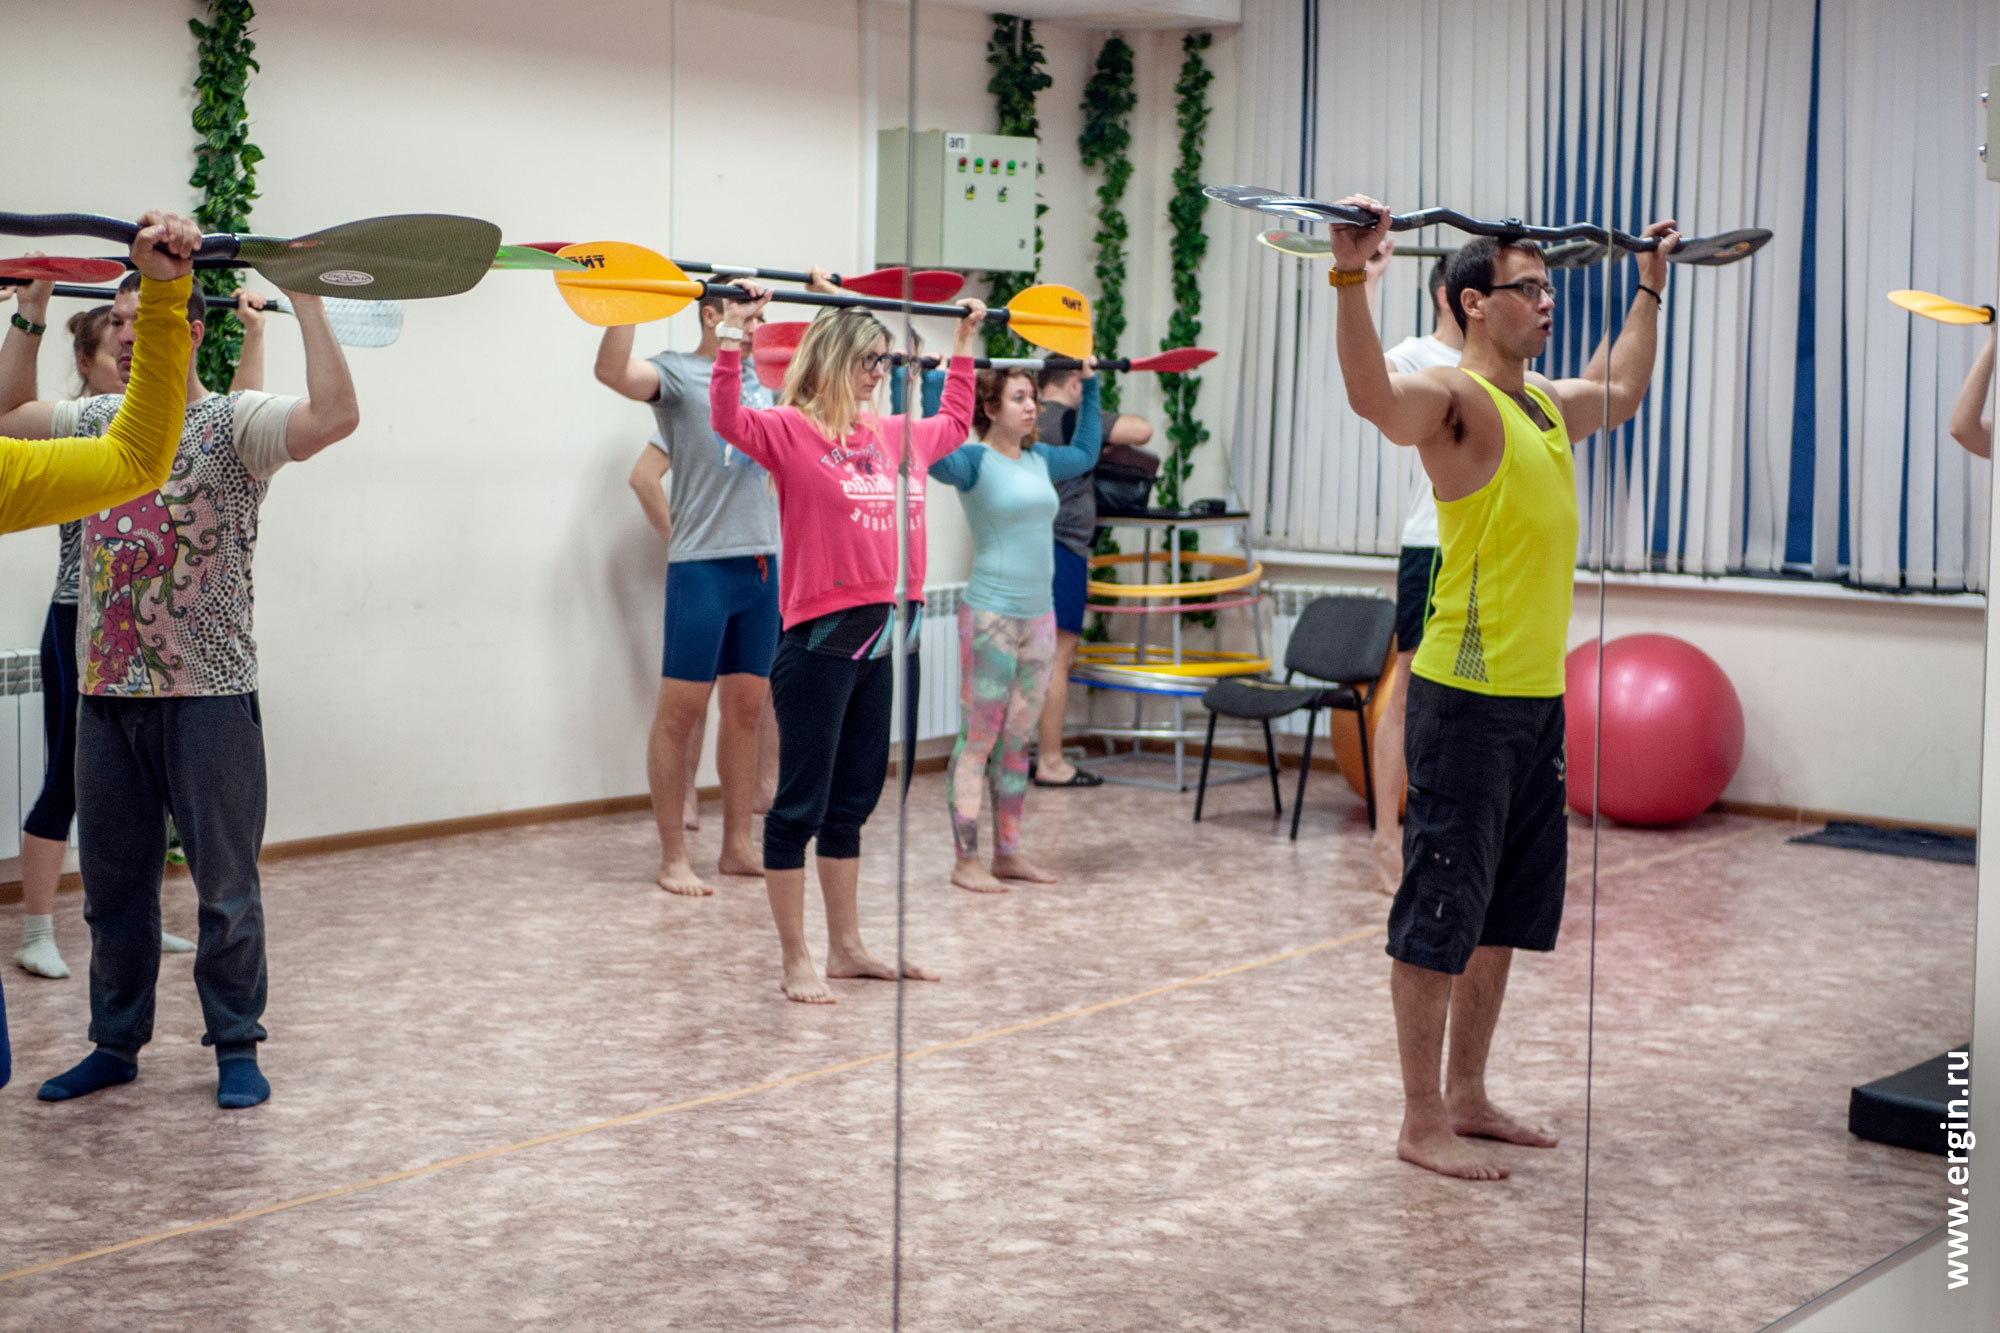 Тренировка по каякингу с веслами в зале: как правильно держать весло?